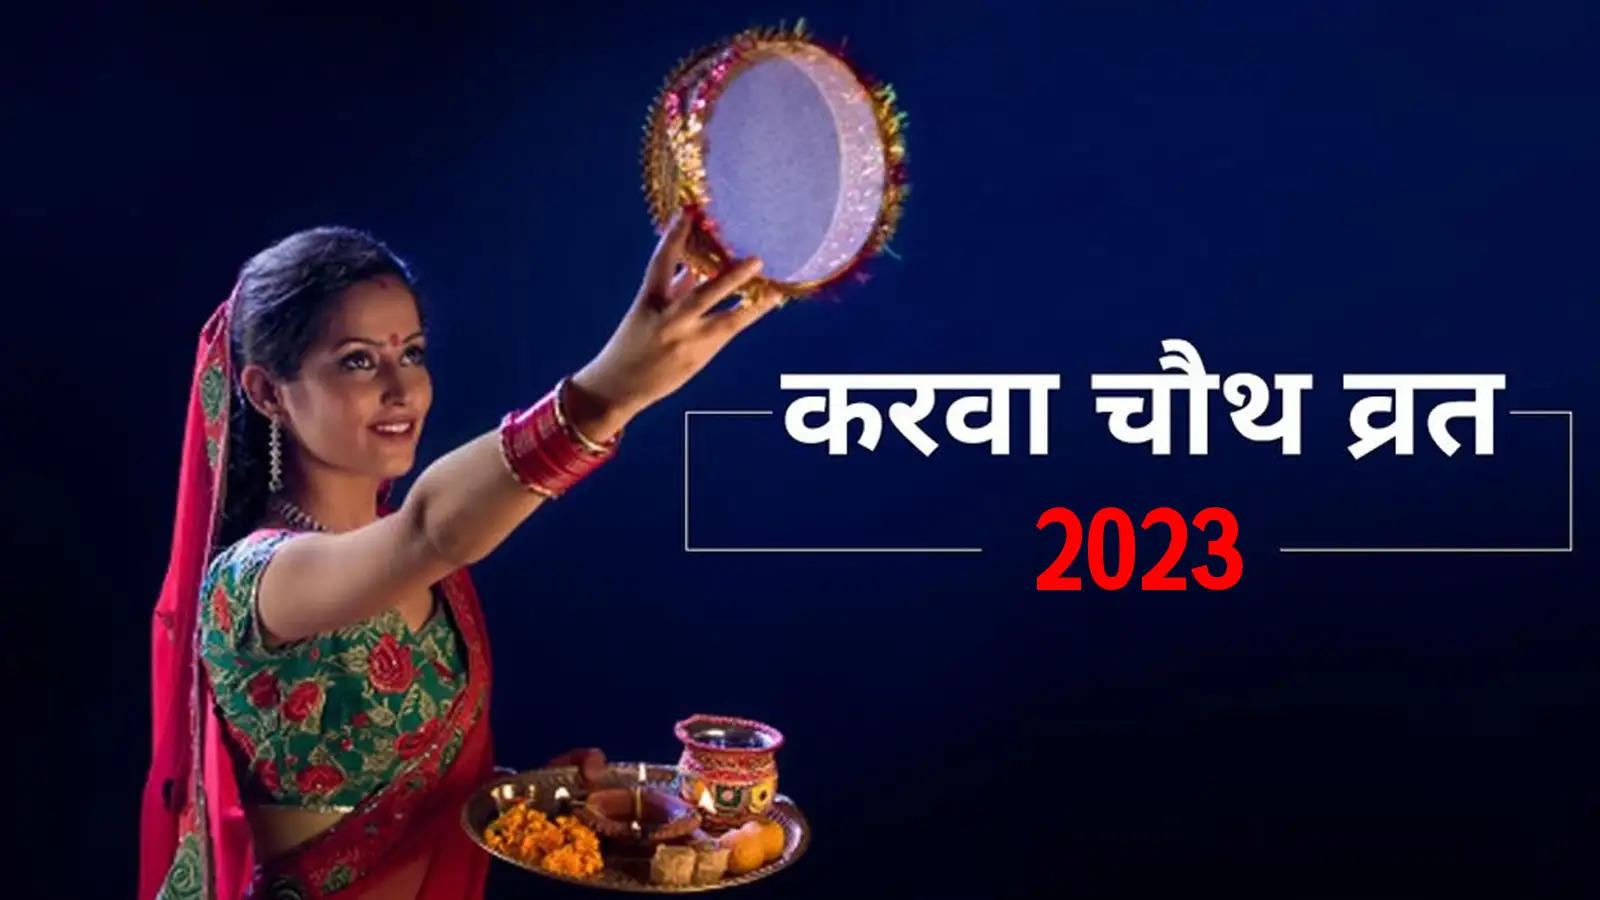 Karwa Chauth 2023 : आने वाला है करवा चौथ, जानिए तारिख और पूजा का शुभ समय 